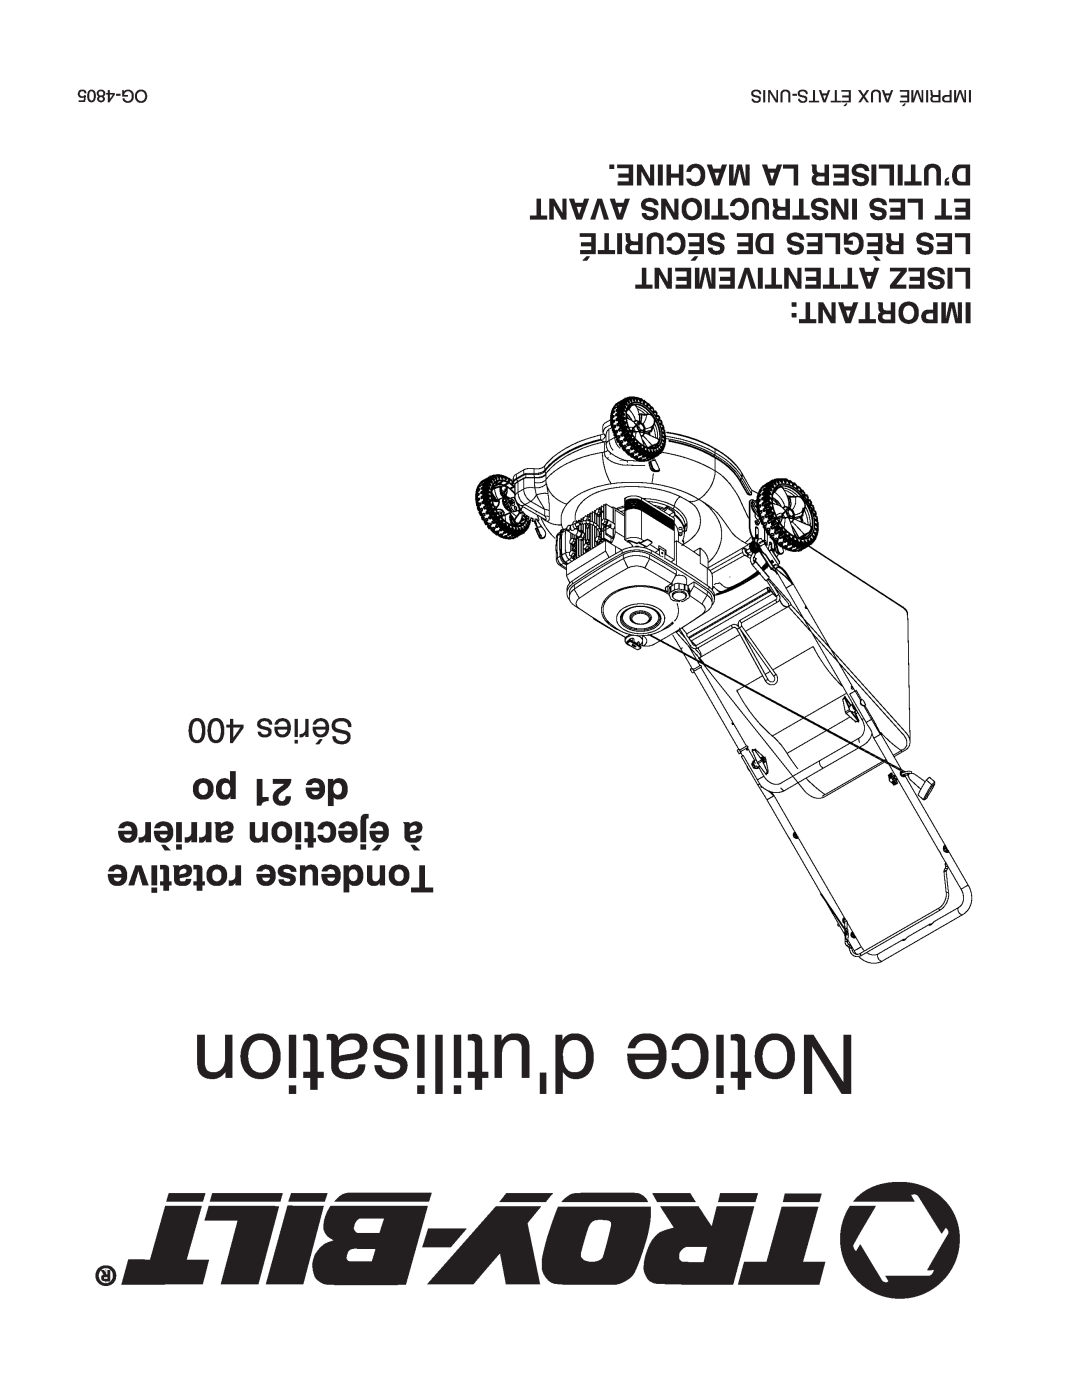 Troy-Bilt 400 Series manual dutilisation Notice, po 21 de arrière éjection à rotative Tondeuse, 400 Séries 